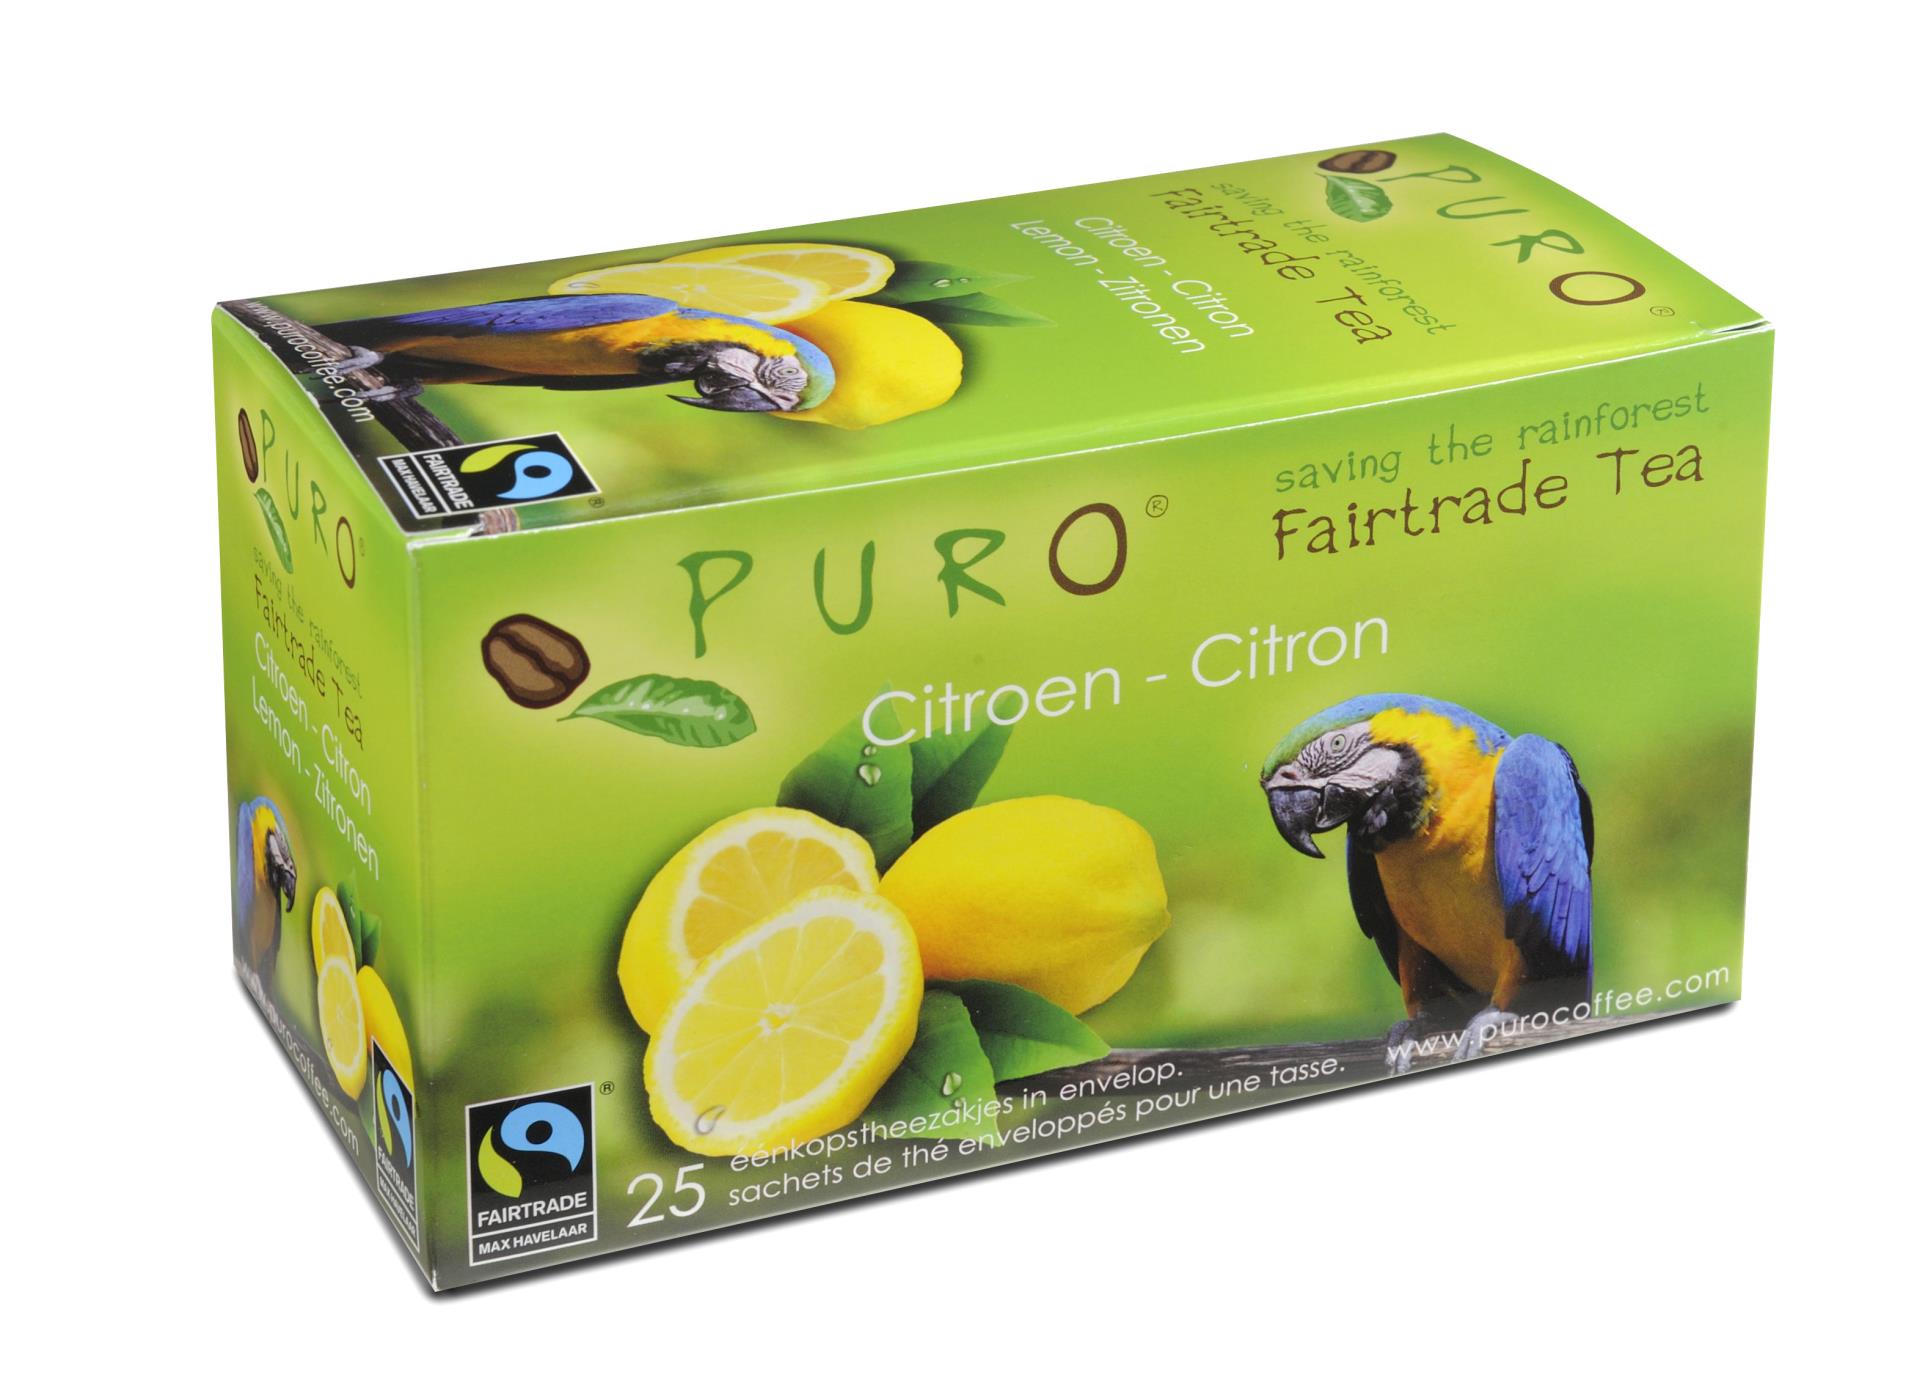 Černý čaj Puro - citrón, Fair trade, 25x 2 g